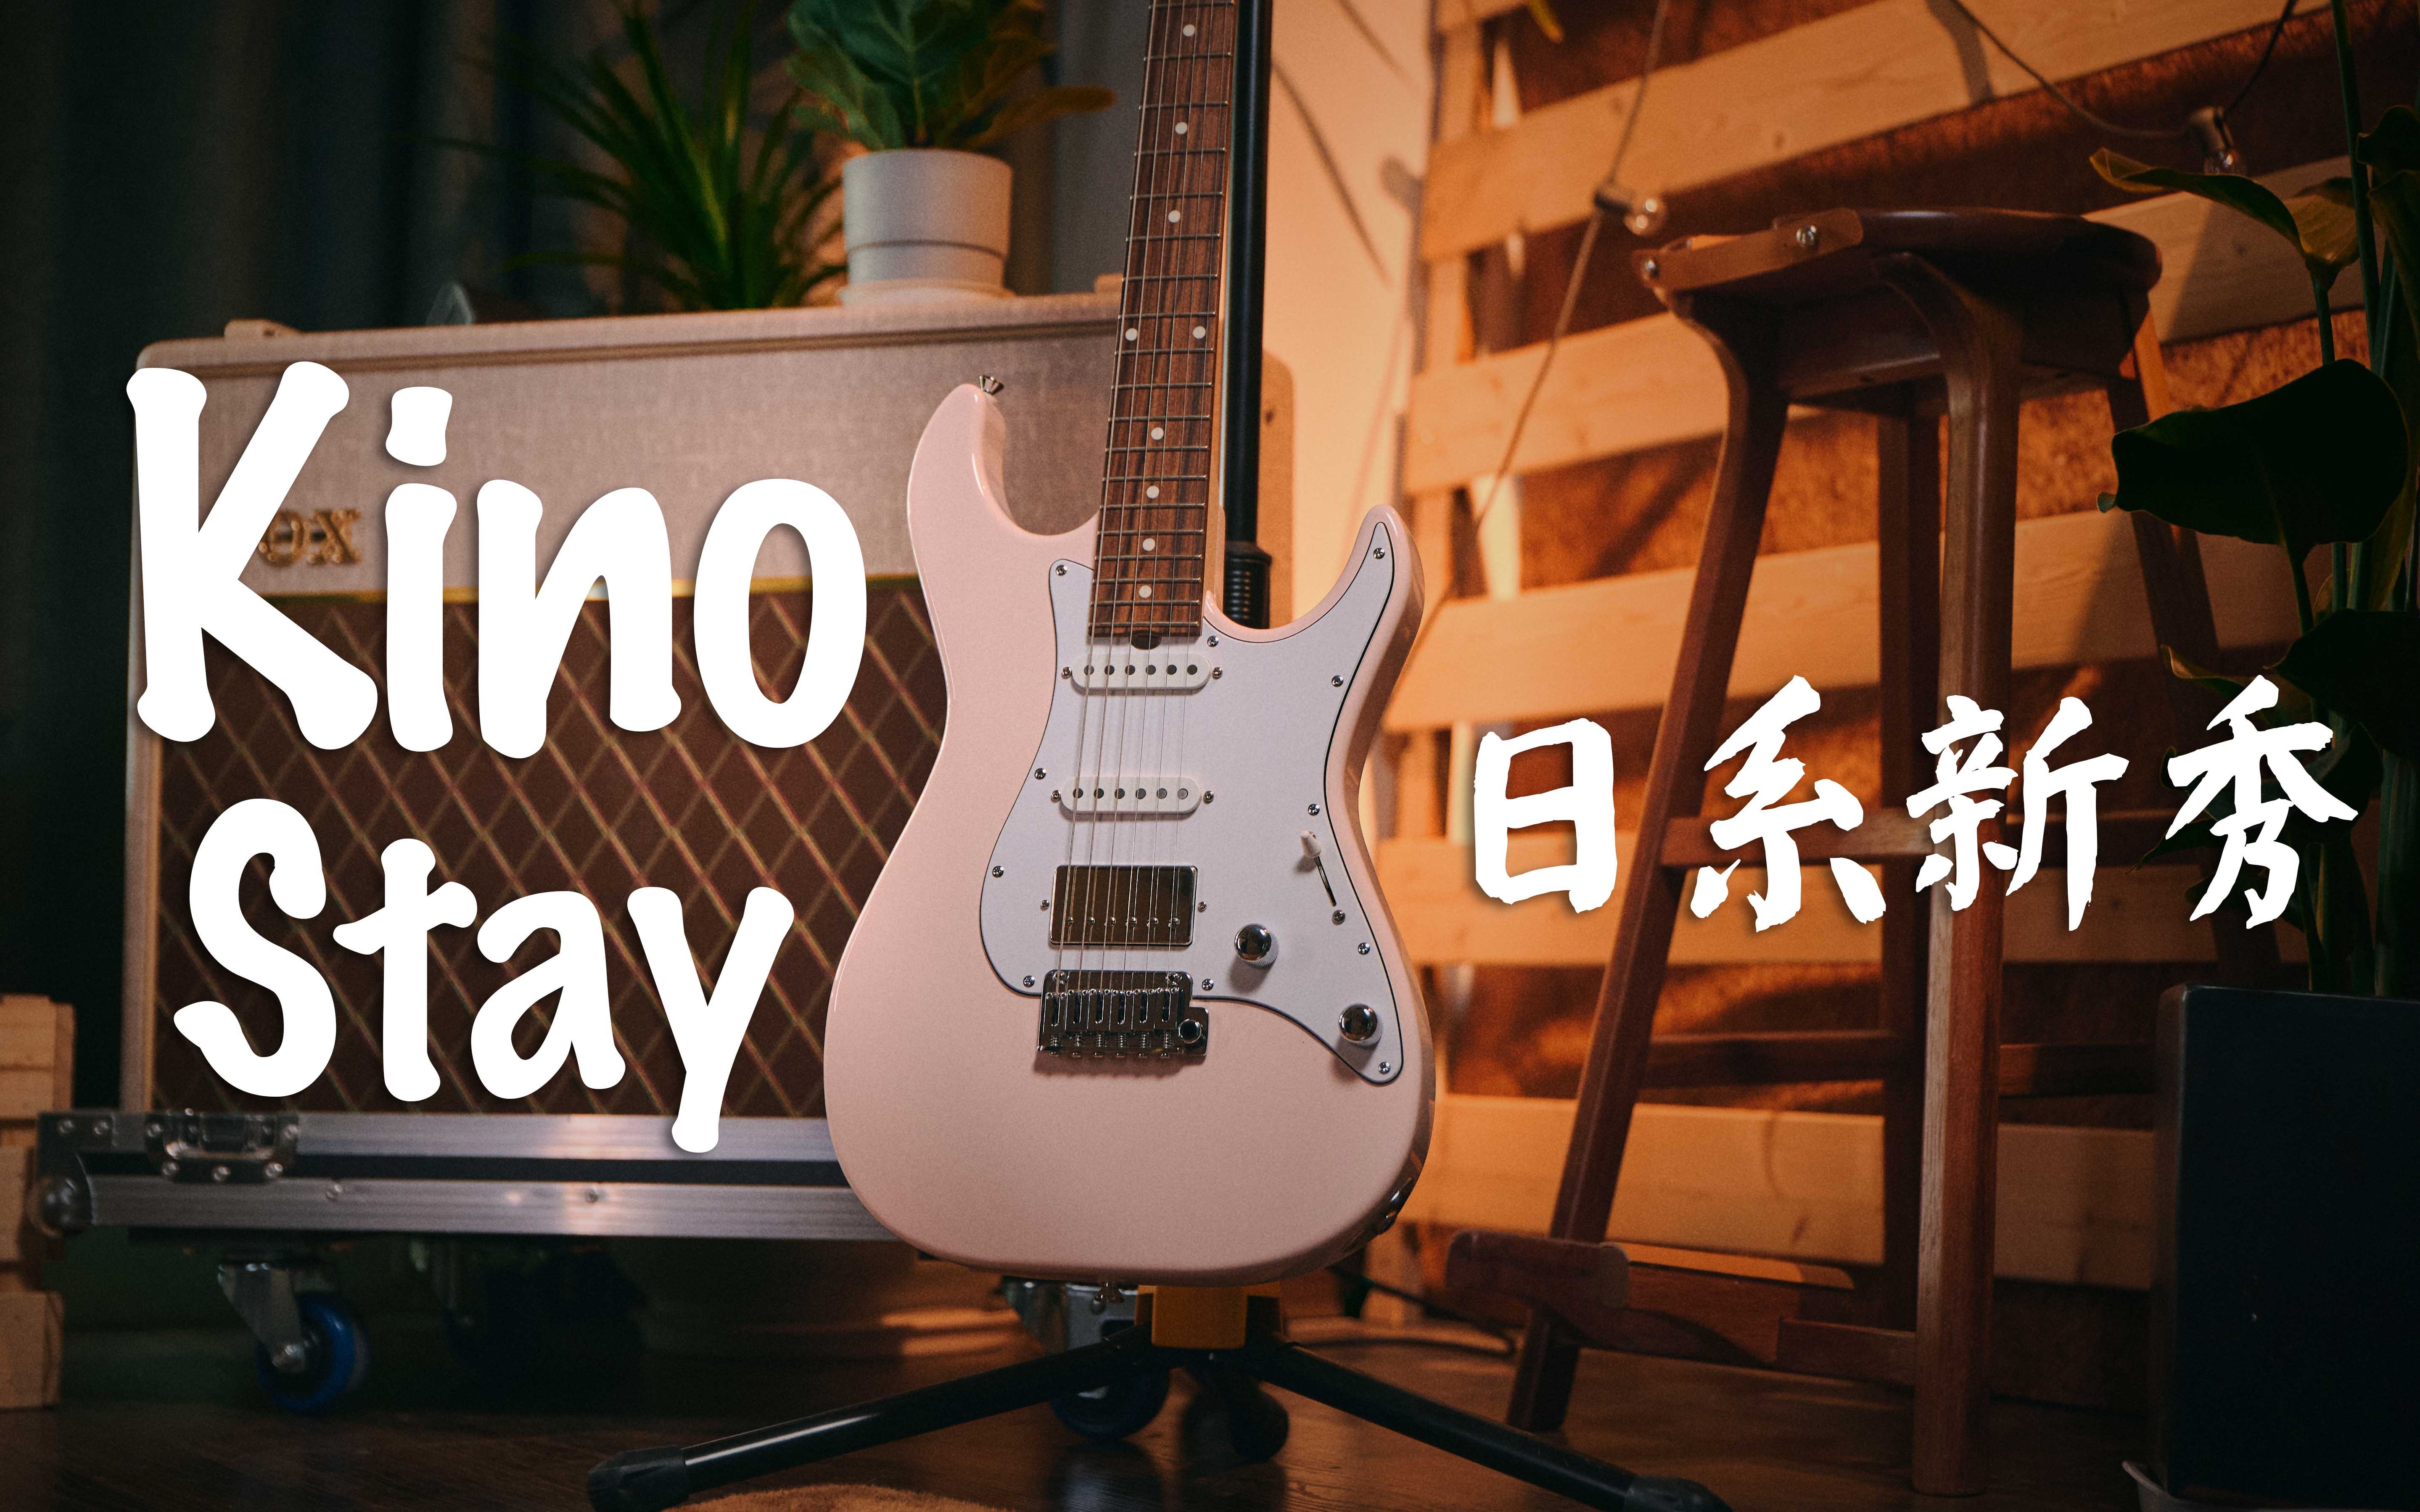 蜜汁Clean！日系新秀Kino Factory Stay系列电吉他上手测评-哔哩哔哩